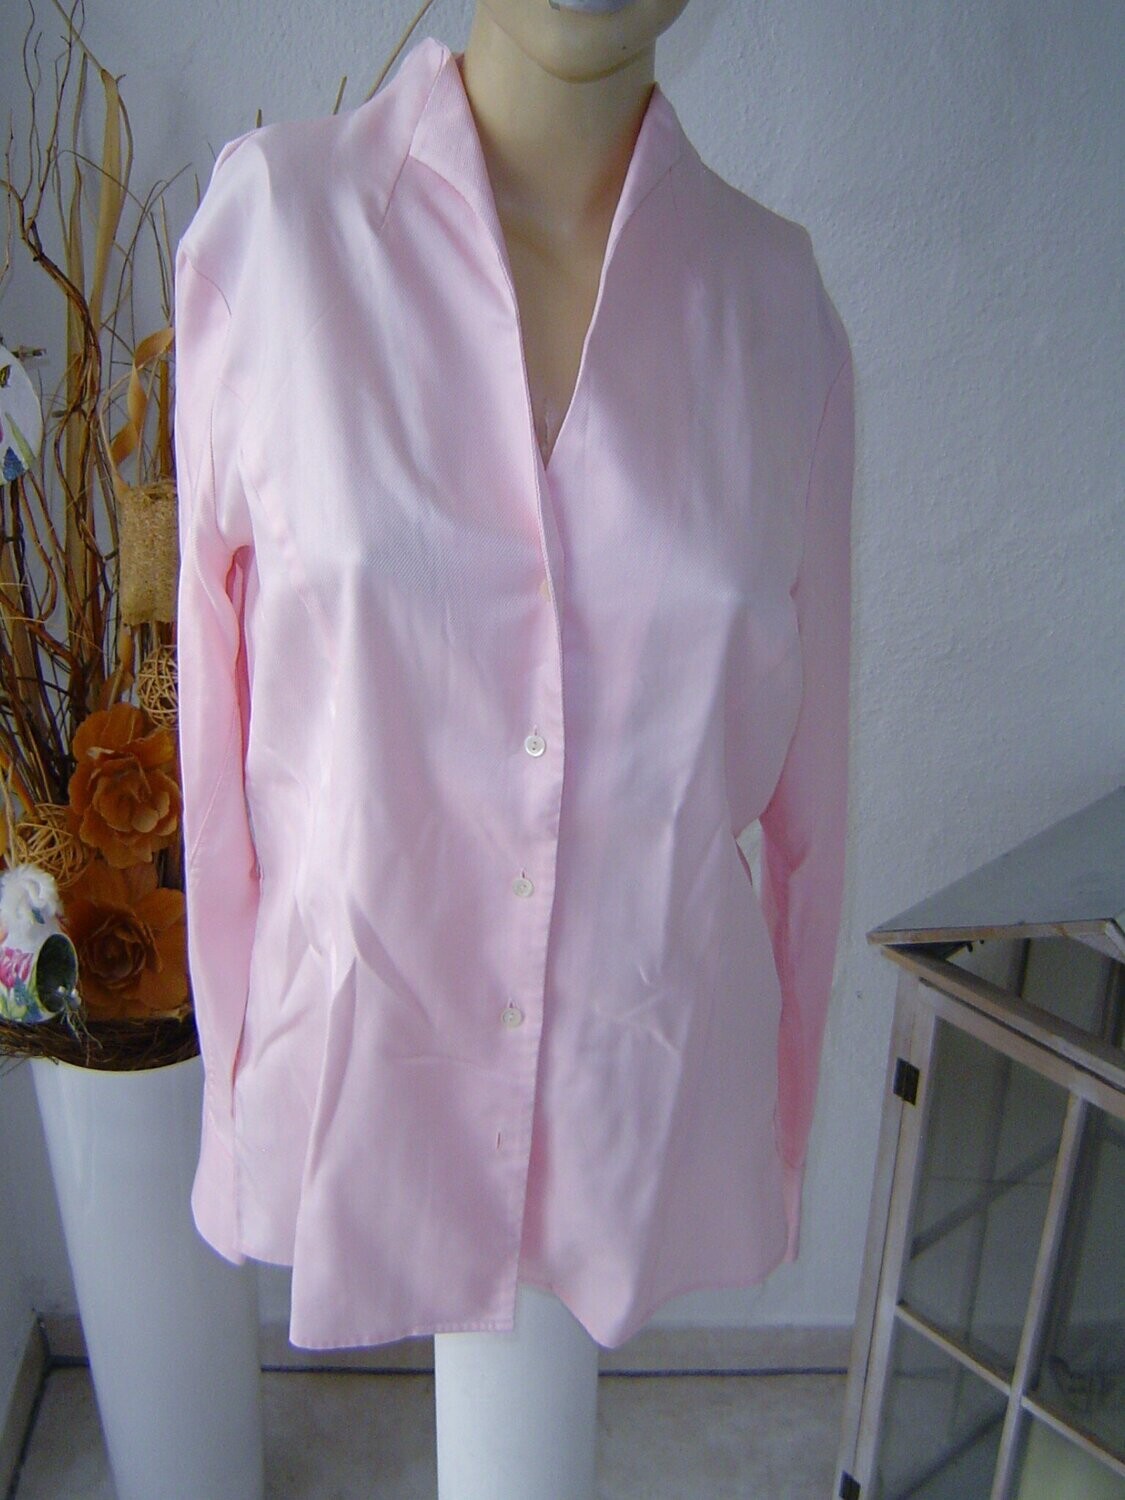 Jacques Britt Damen Bluse Gr. 40 rosa glänzend gestreift tailliert